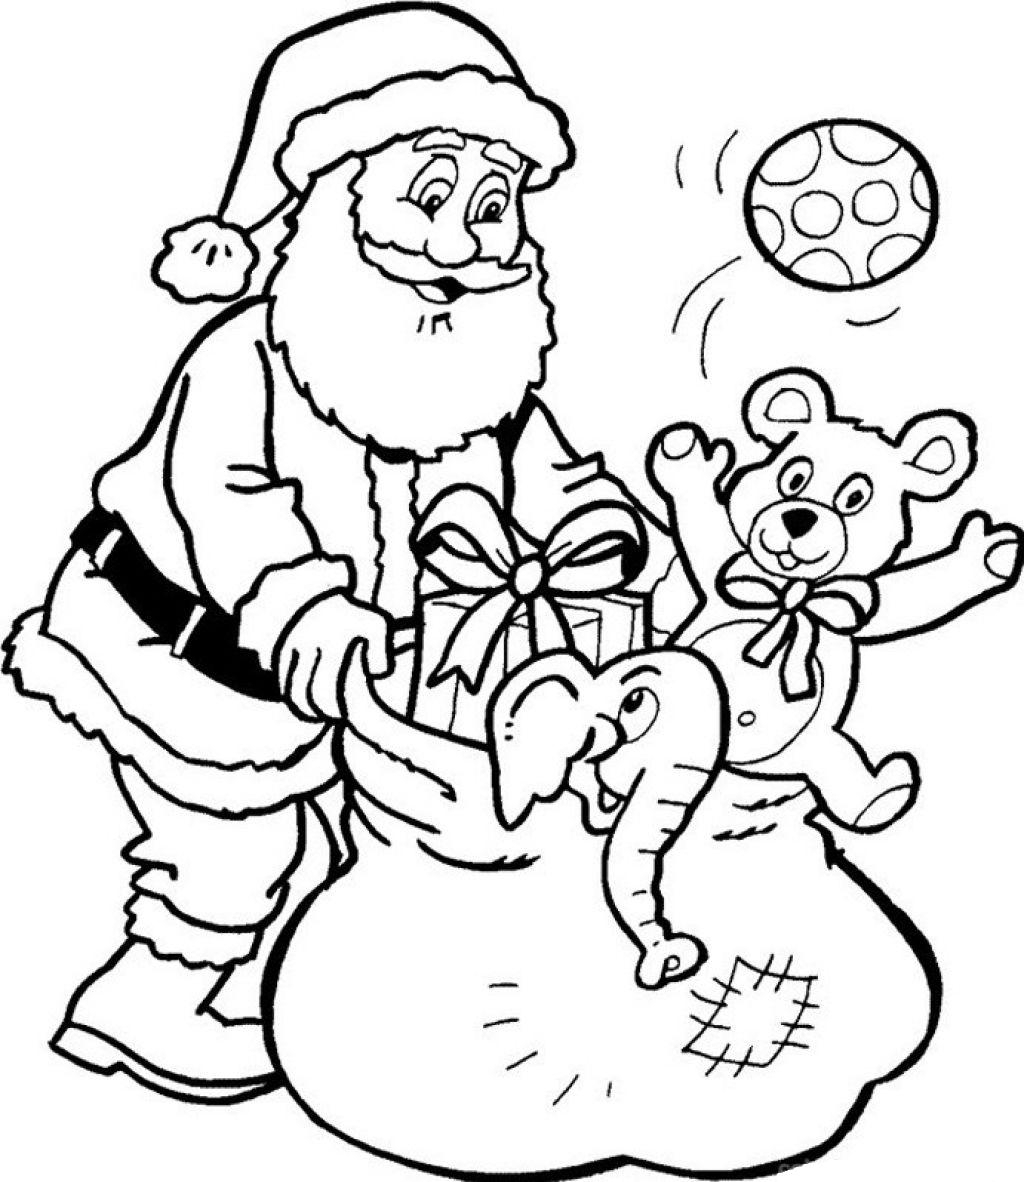 Santa Coloring Pages Free 21 Santa Coloring Pages Printable Free Printable Free Coloring